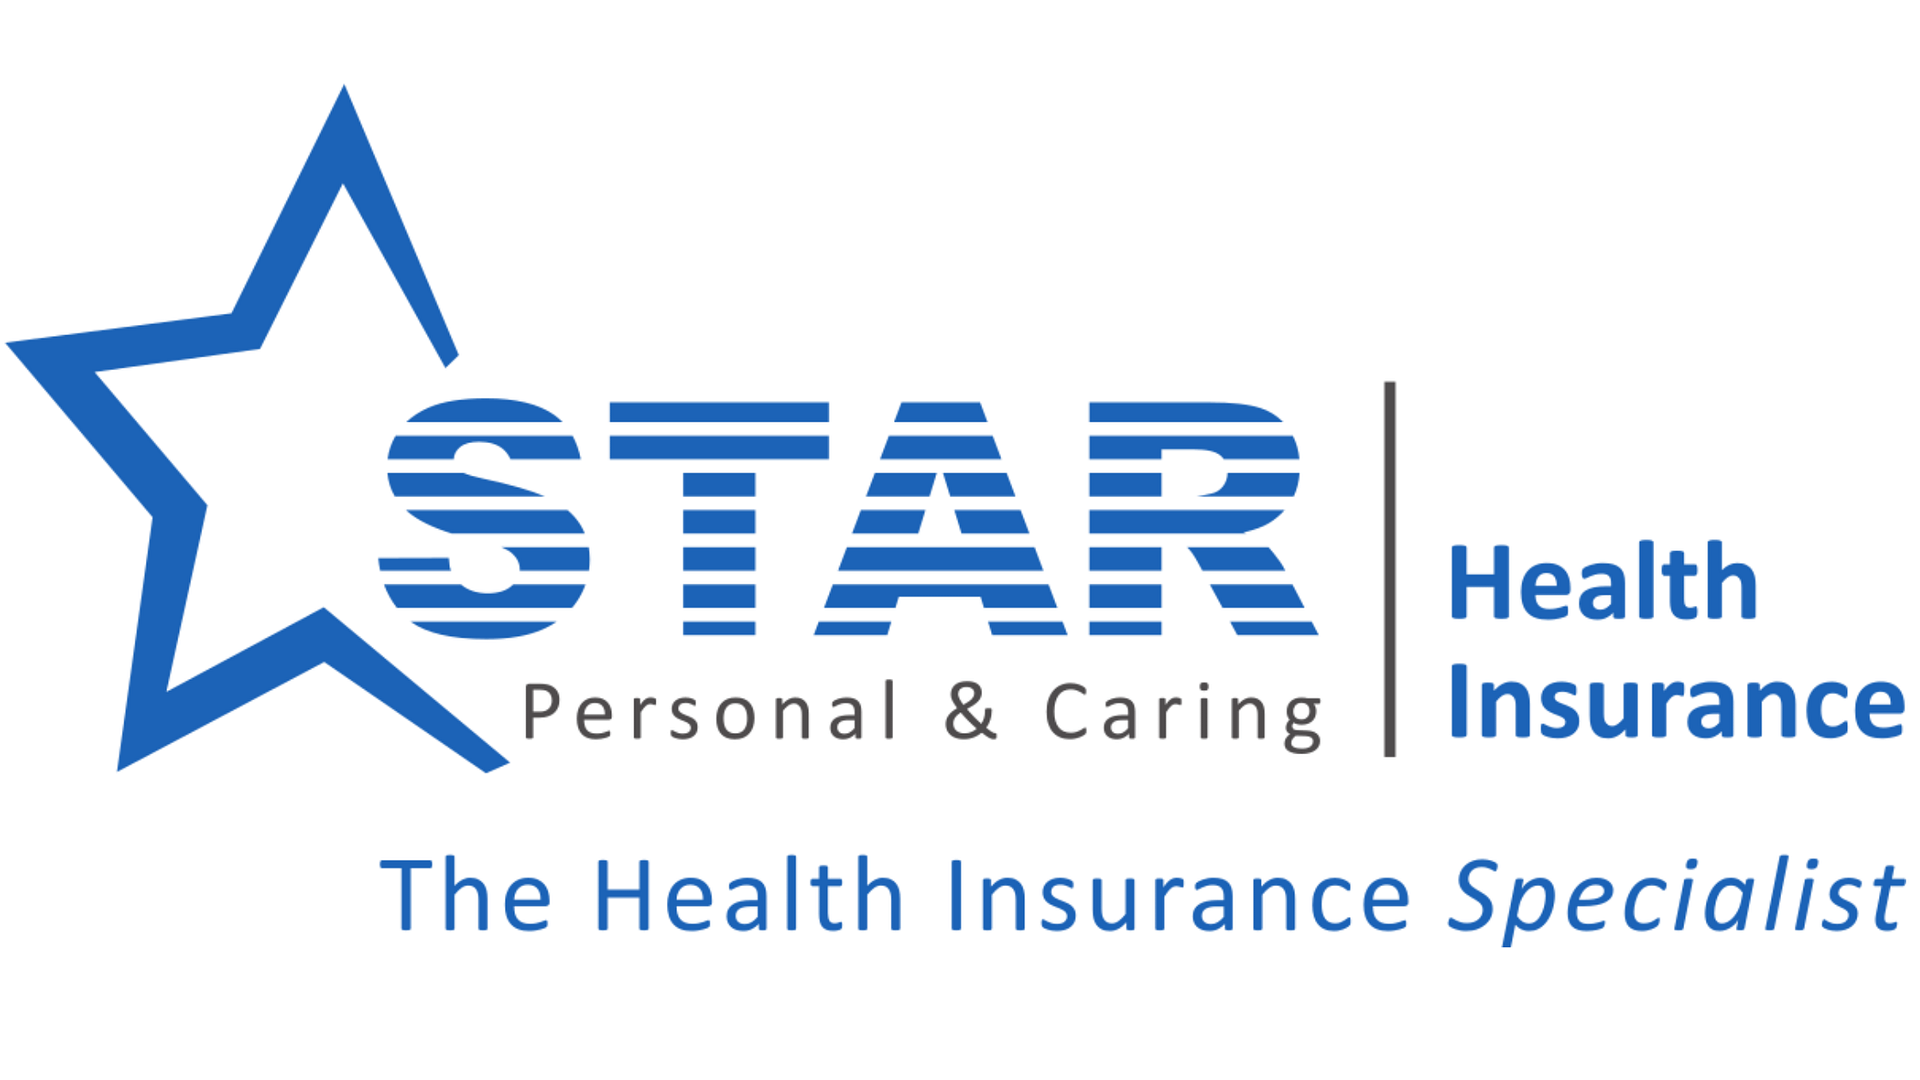 Star Health Insurance Plans For Family